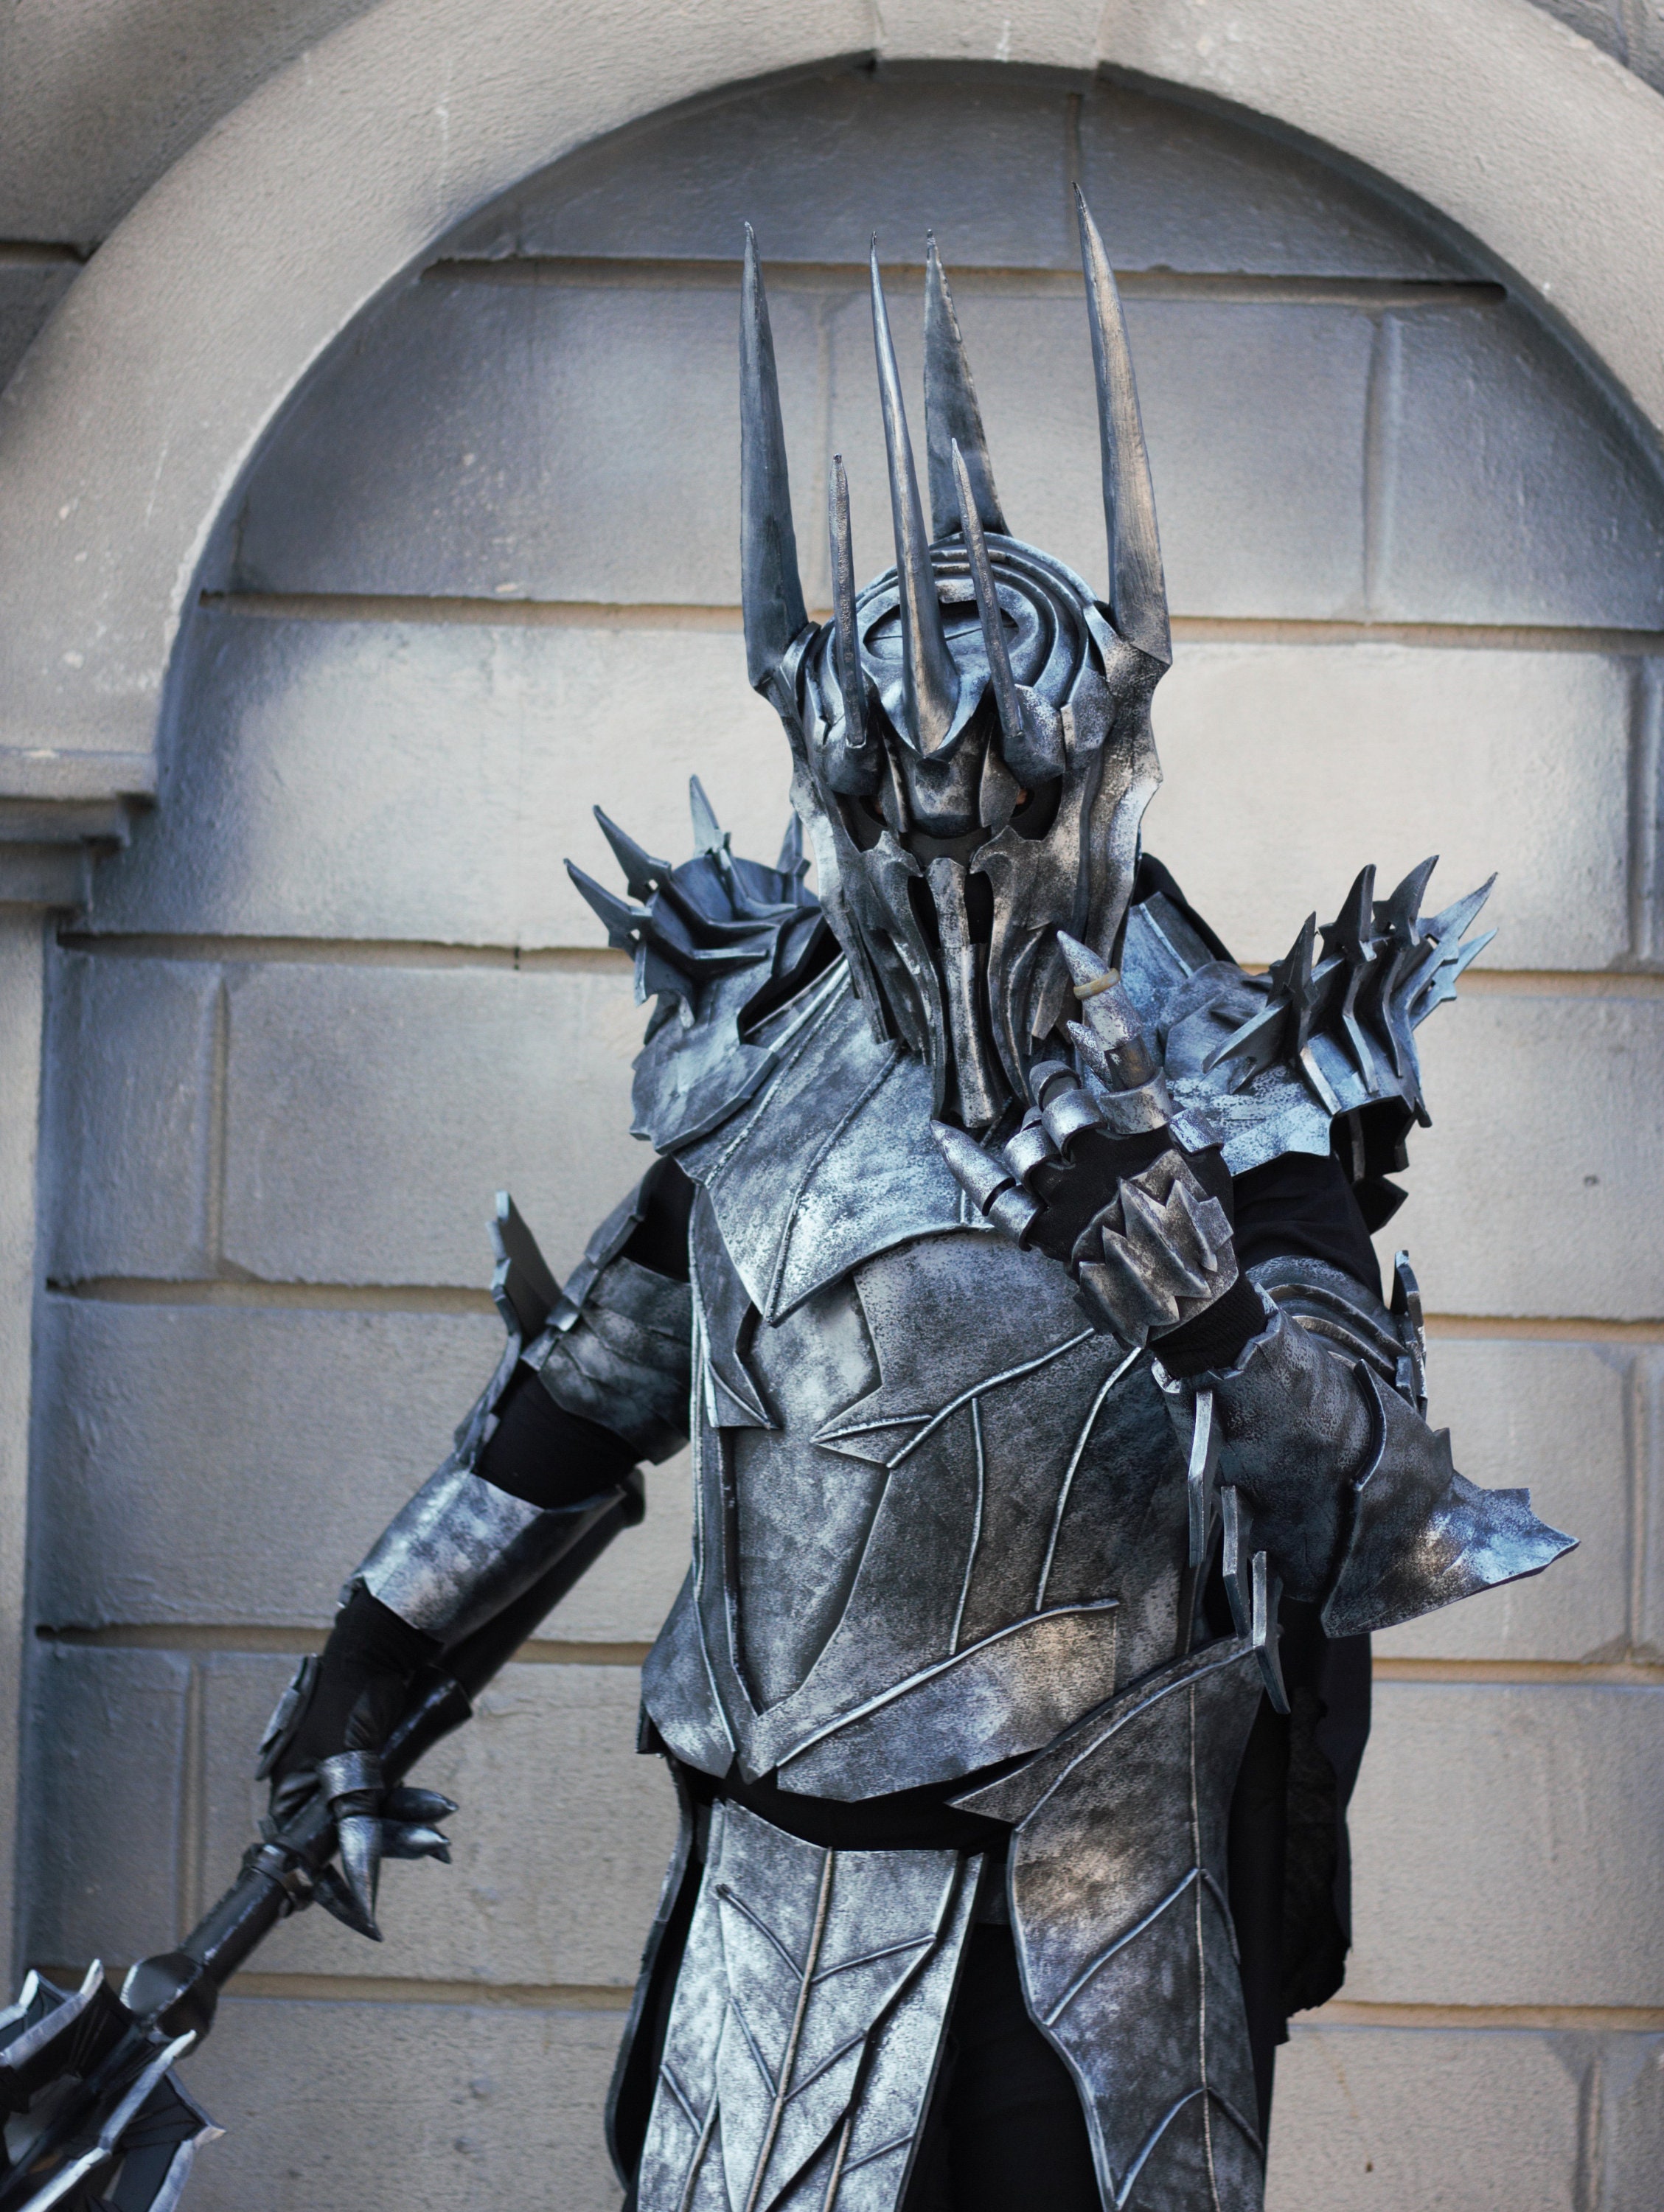 Sauron costume